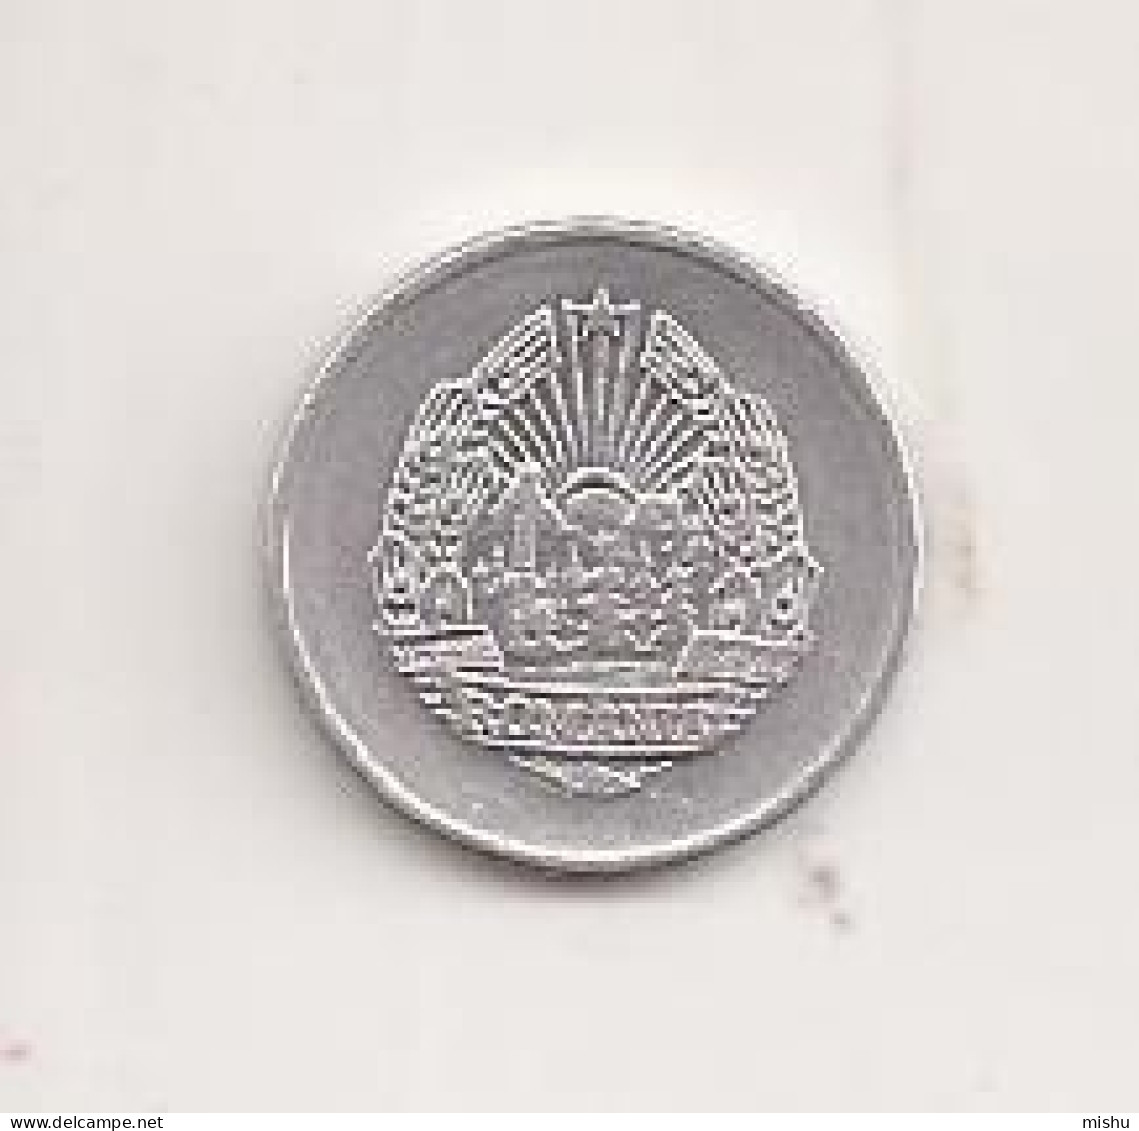 Coin - Romania - 5 Bani 1975 V7 - Roumanie